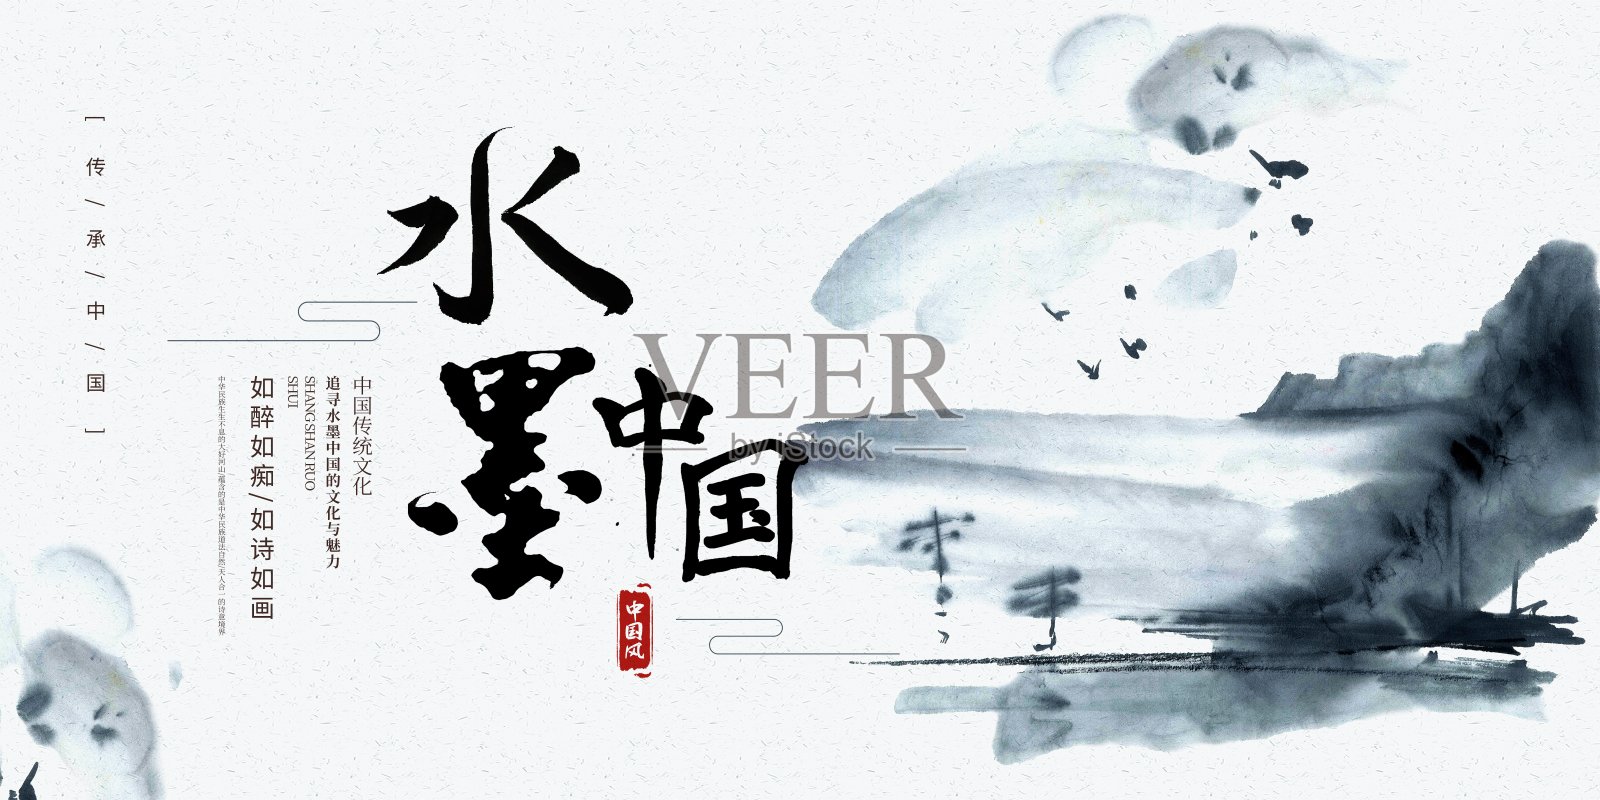 水墨中国文化宣传展板设计模板素材